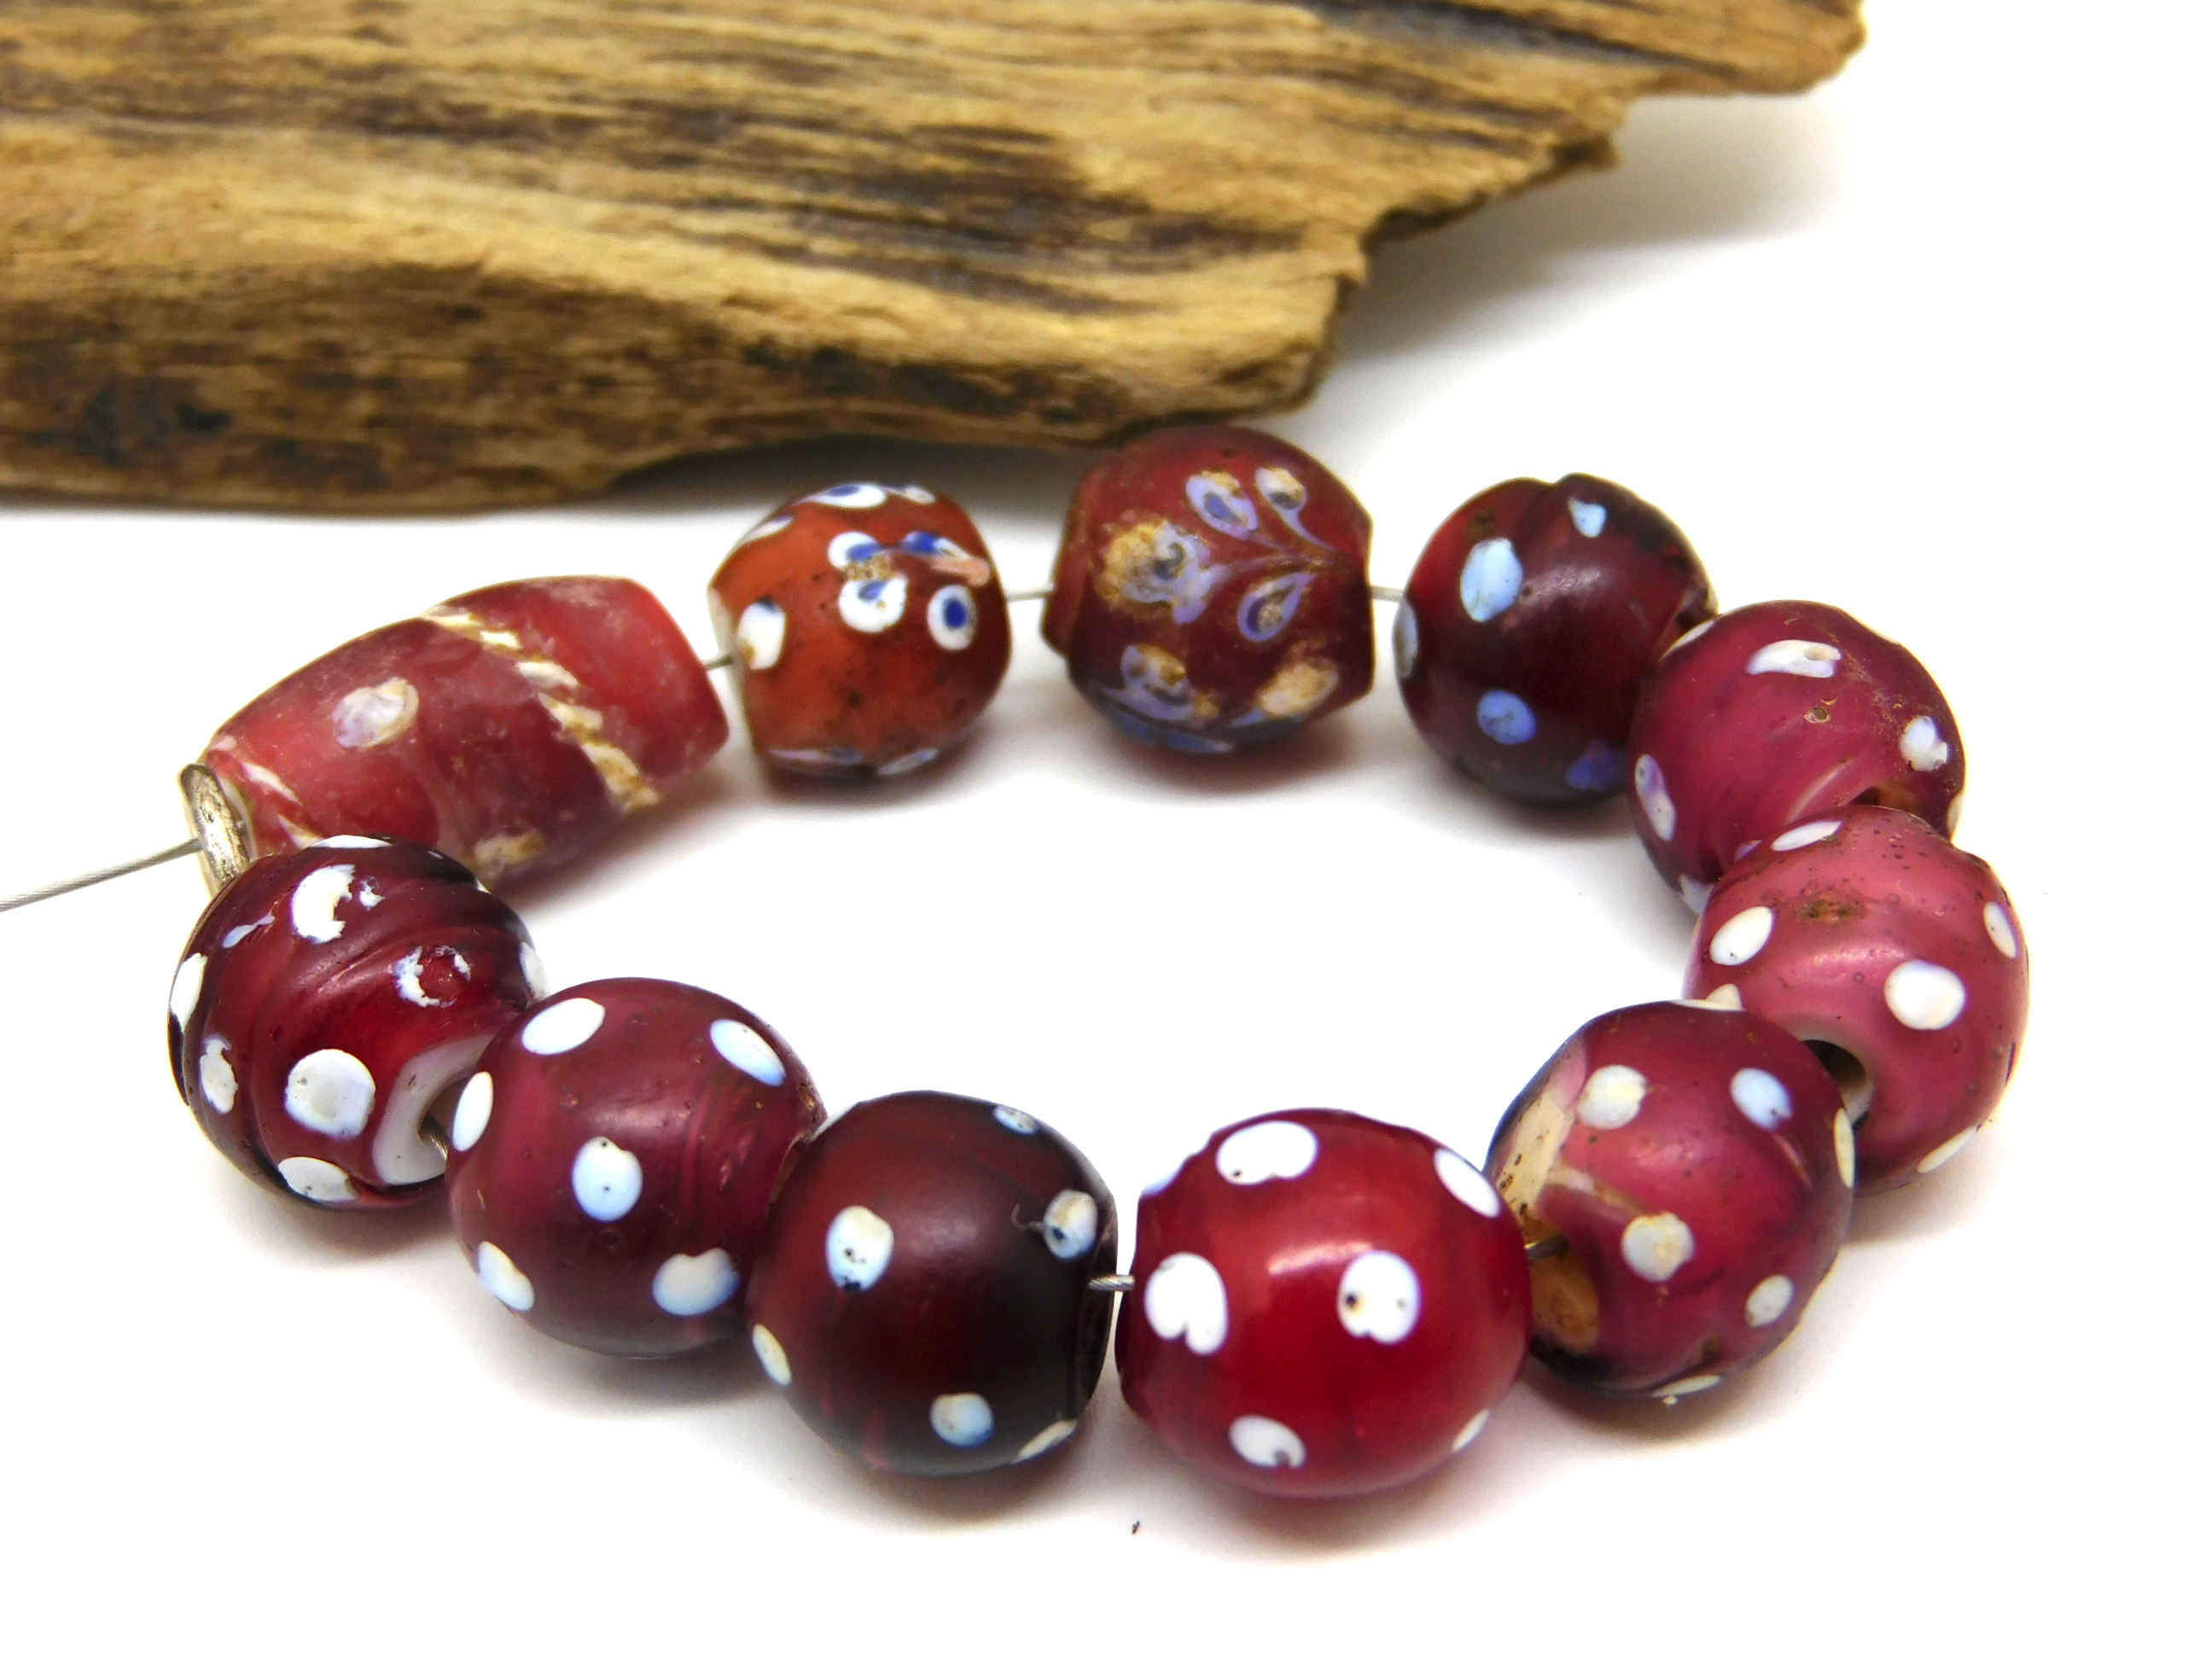 11 rote Skunk Beads - alte venezianische Glasperlen - Handelsperlen